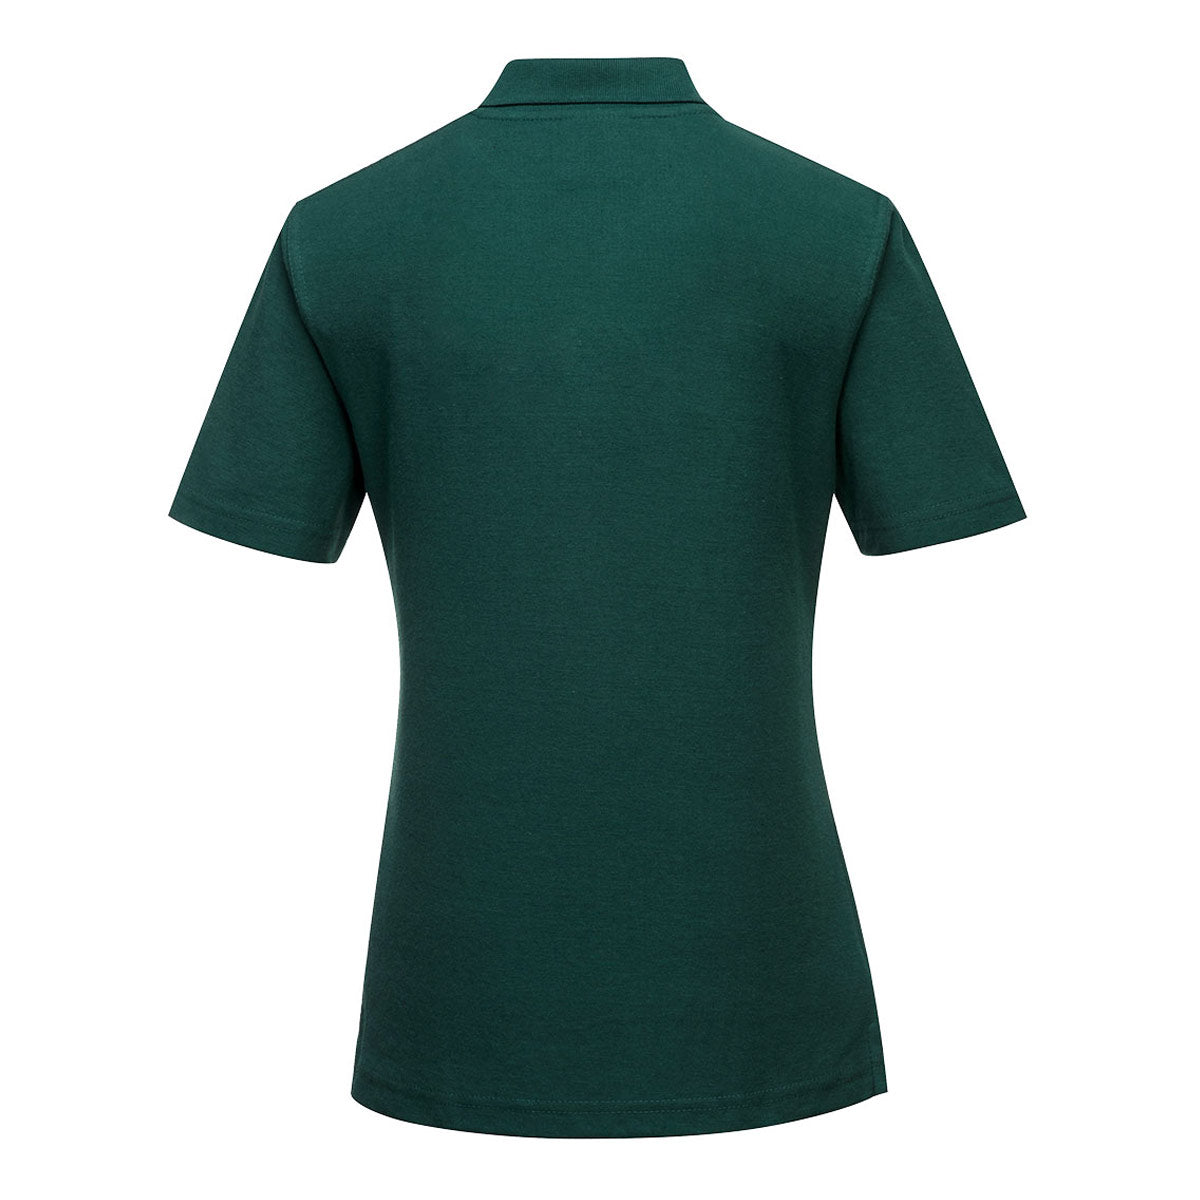 Poloshirt til damer - Flaske grøn - Størrelse: M